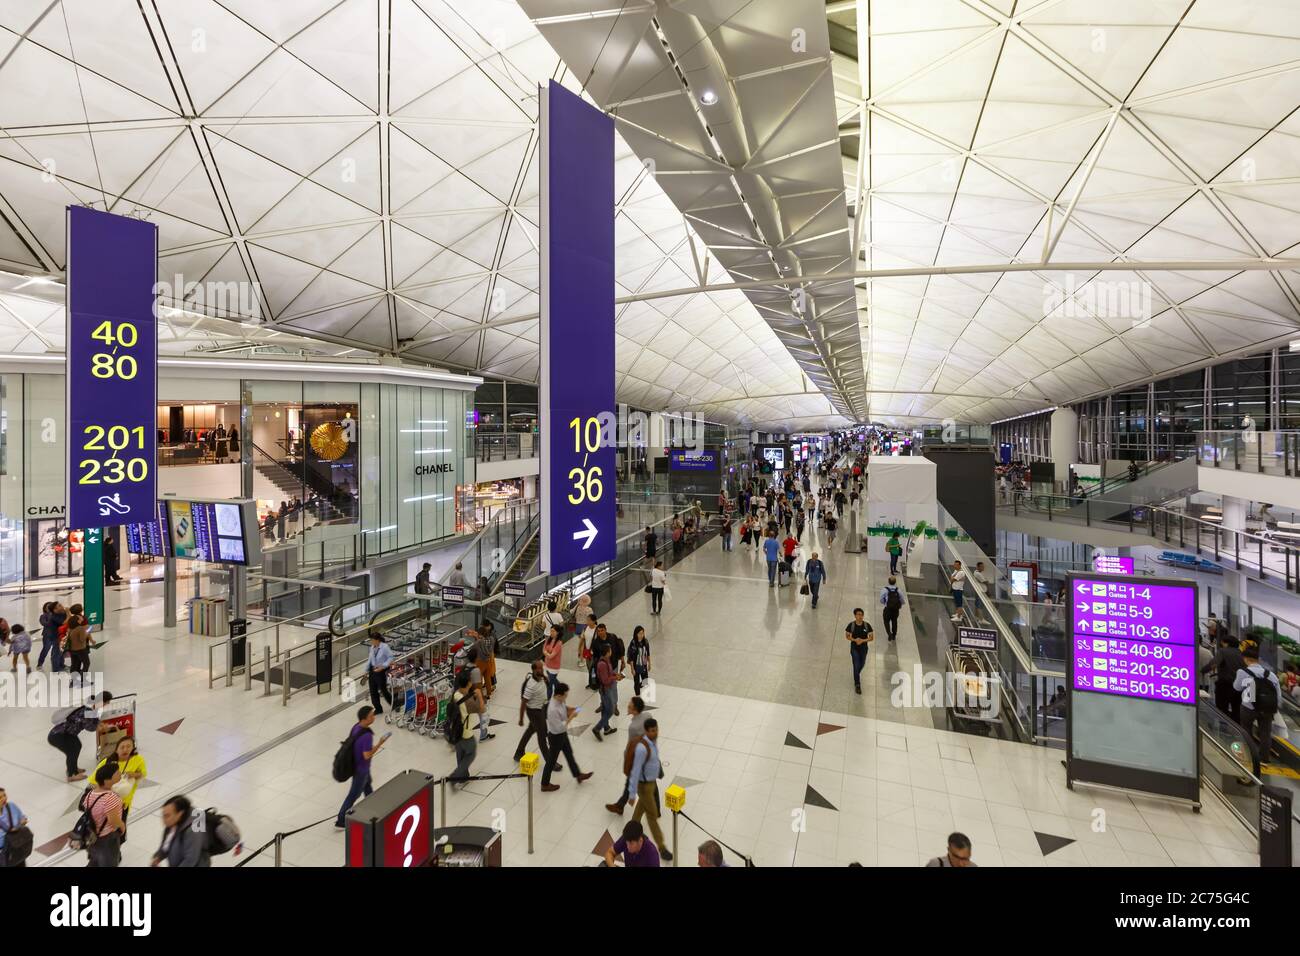 Hong Kong, China - September 20, 2019: Terminal of Hong Kong airport (HKG) in China. Stock Photo